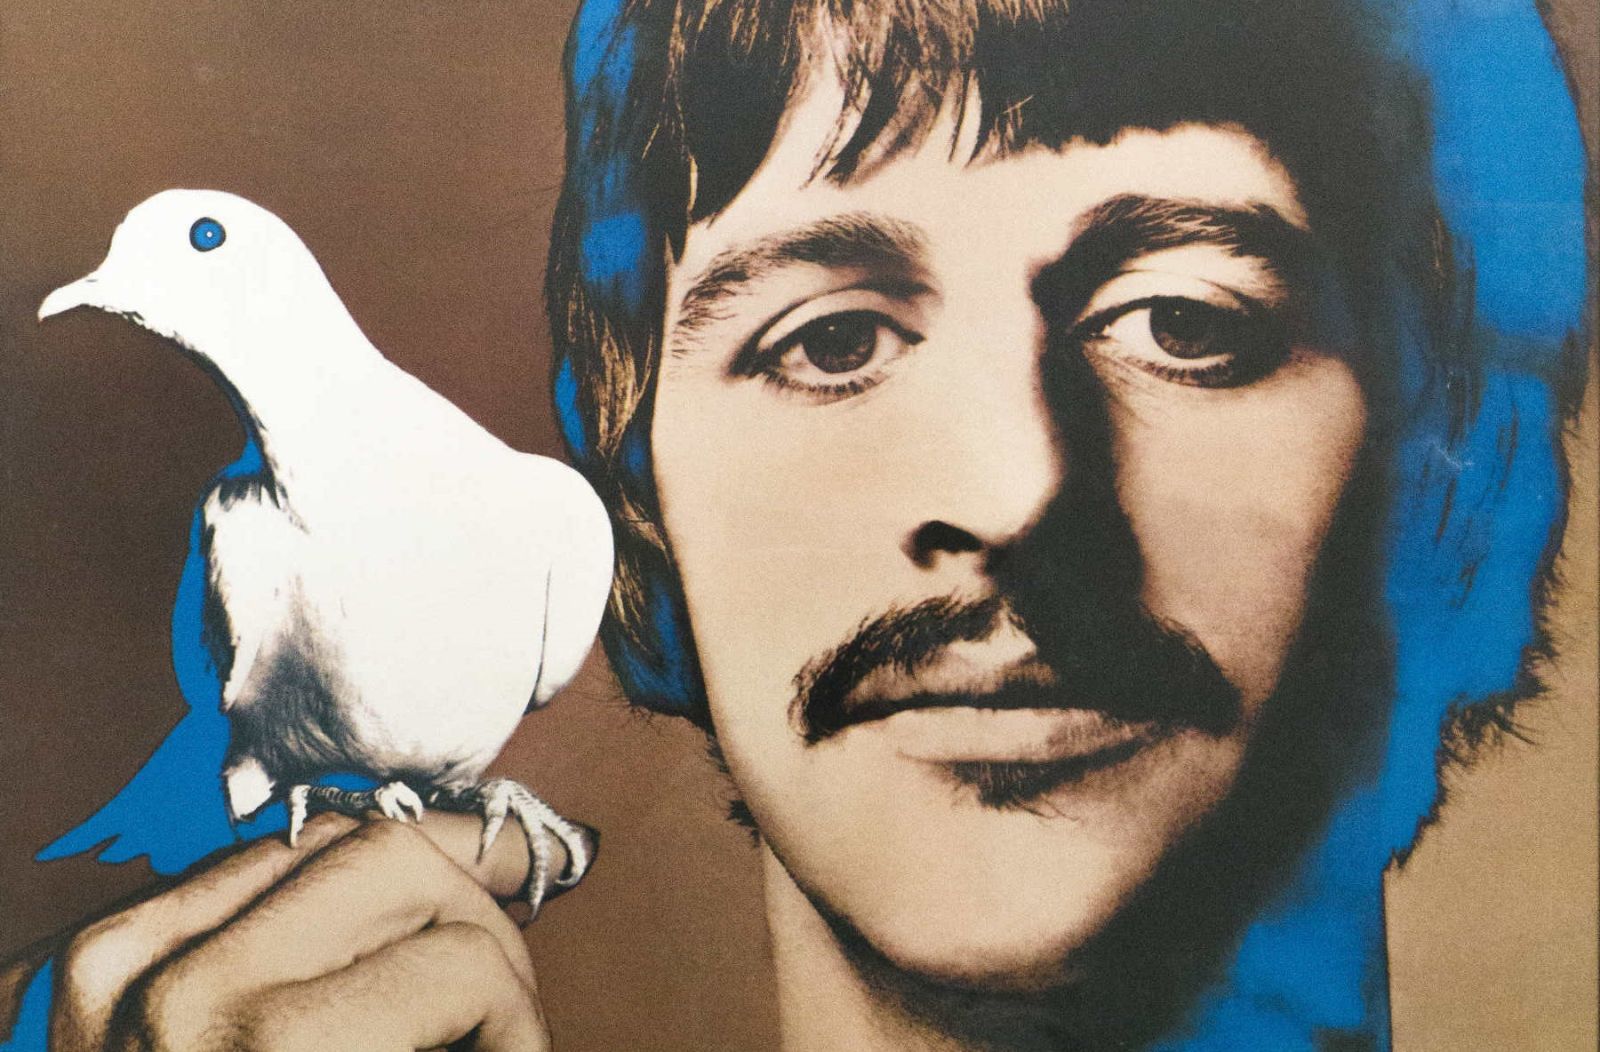 Richard Avedon
[Ritratti psichedelici dei Beatles]
1967
serie di quattro poster
Milano, Collezione Italo Rota